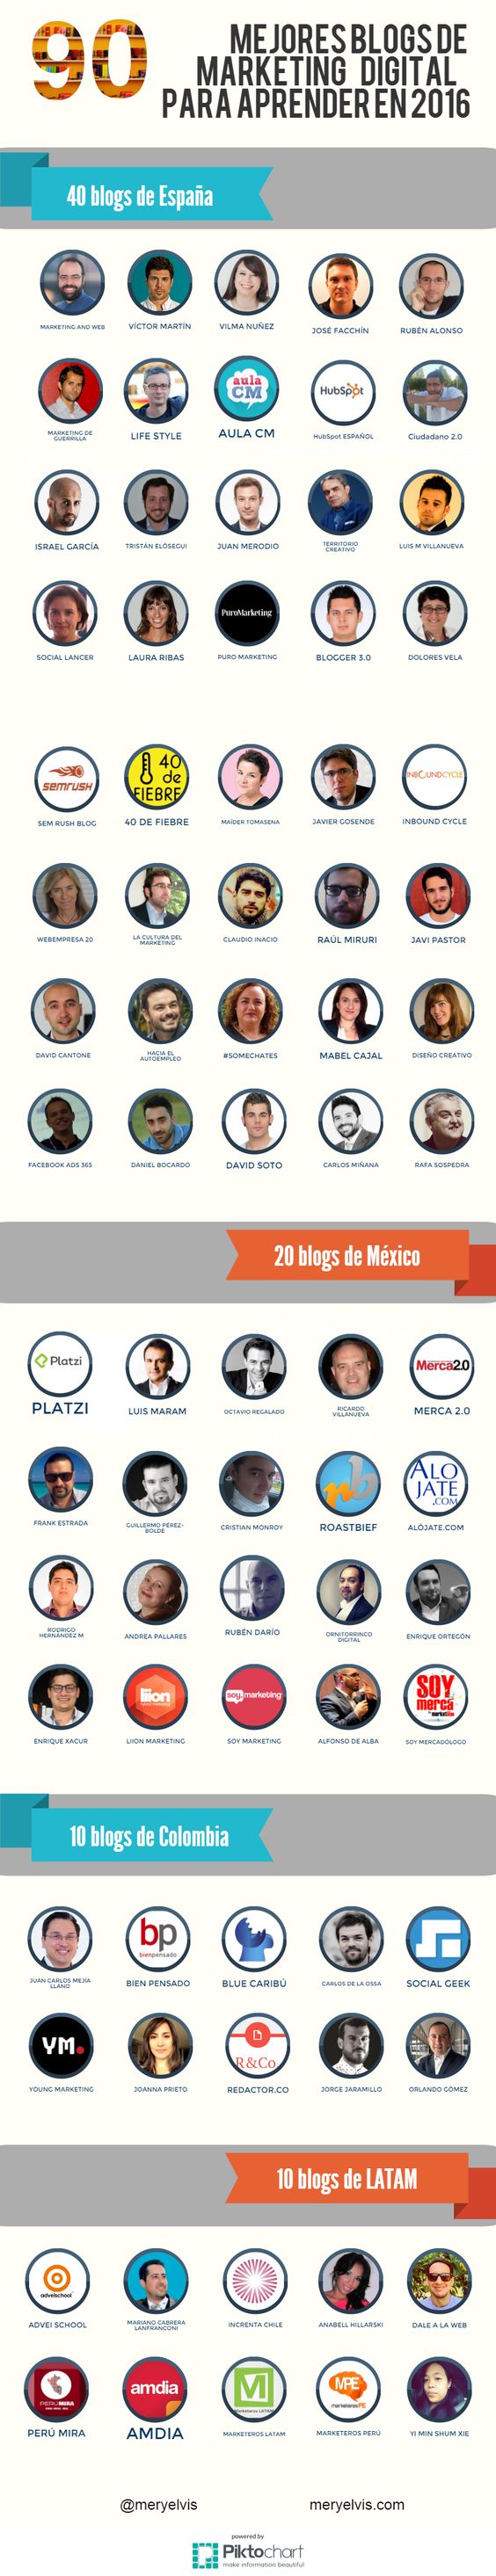 90 mejores blog de marketing digital para aprender en el 2016. Infografía en español. #CommunityManager